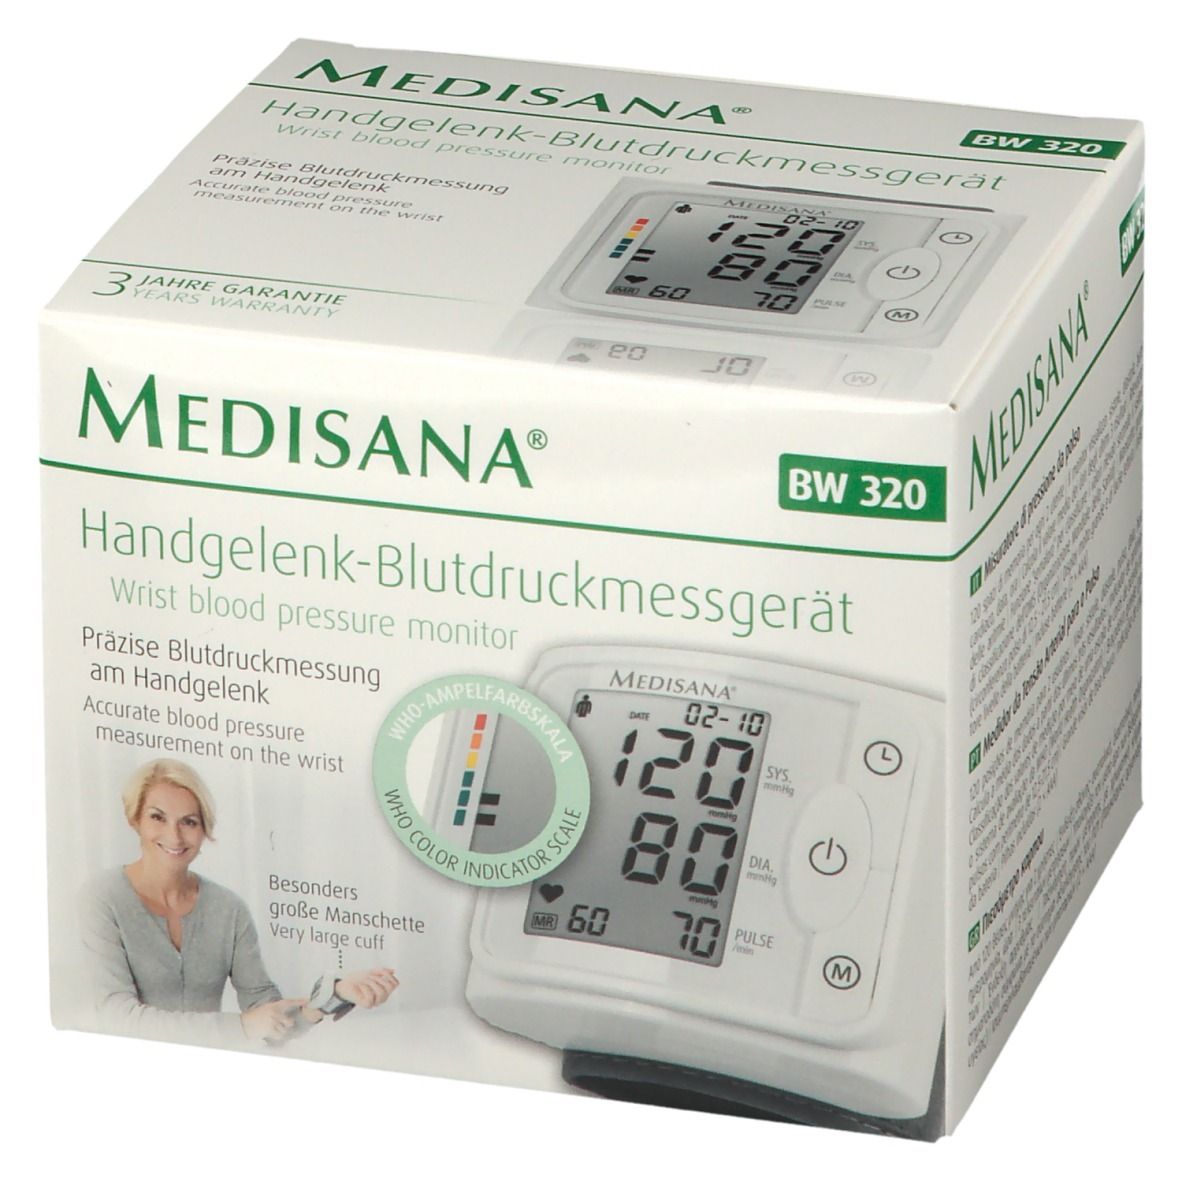 Redcare Handgelenk-Blutdruckmessgerät - St 320 Medisana BW 1 Apotheke